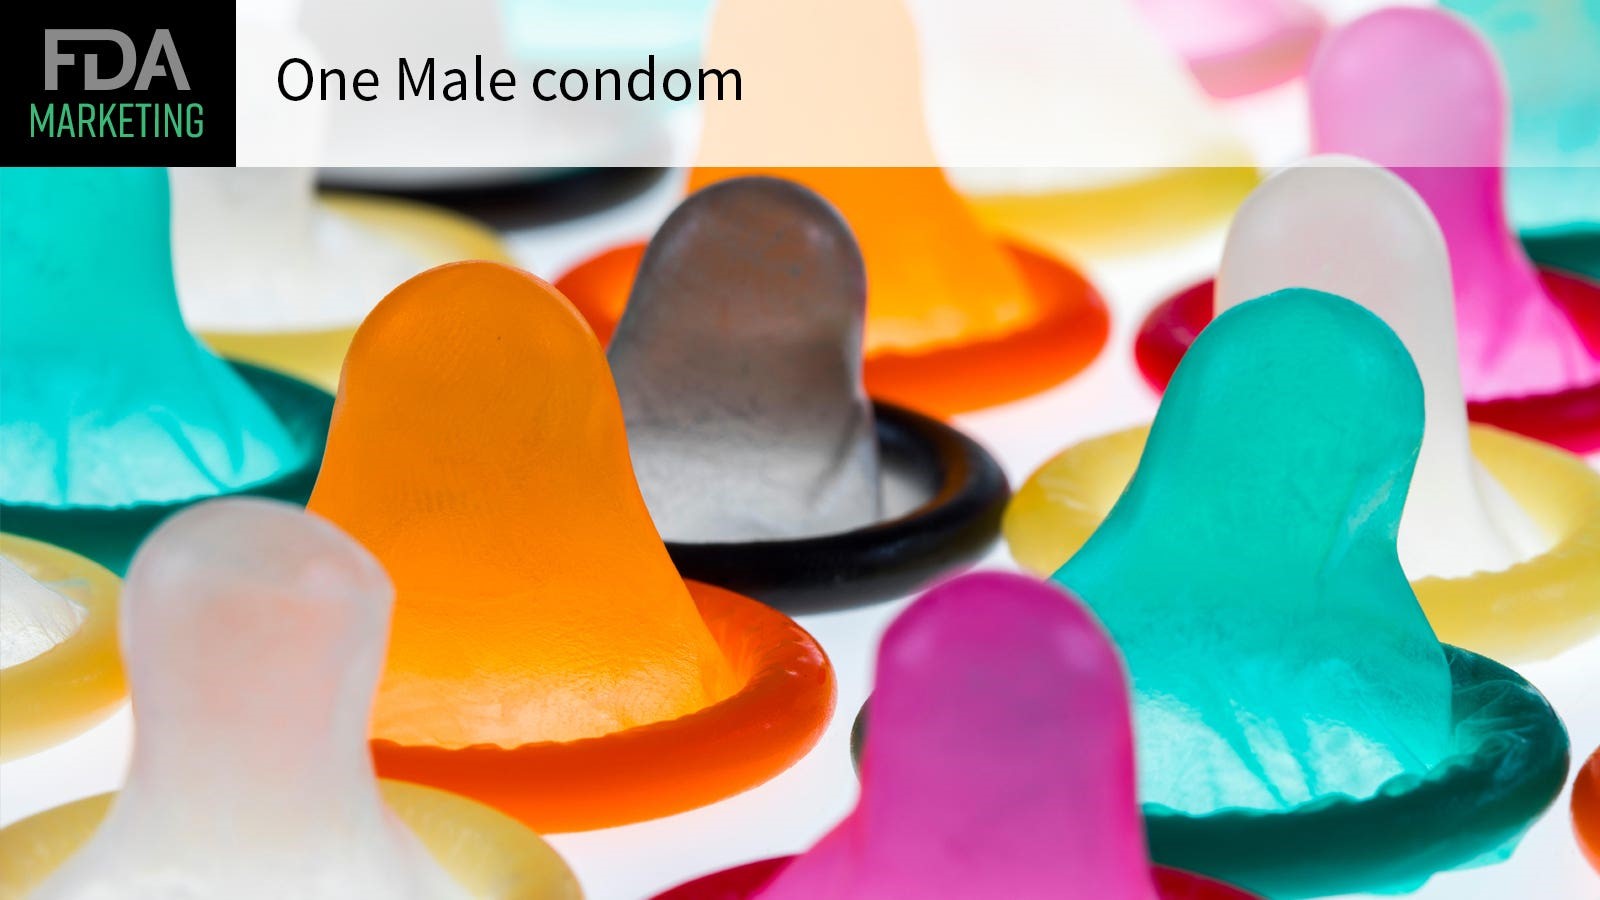 FDA 批准第一個專門用於肛交的保險套